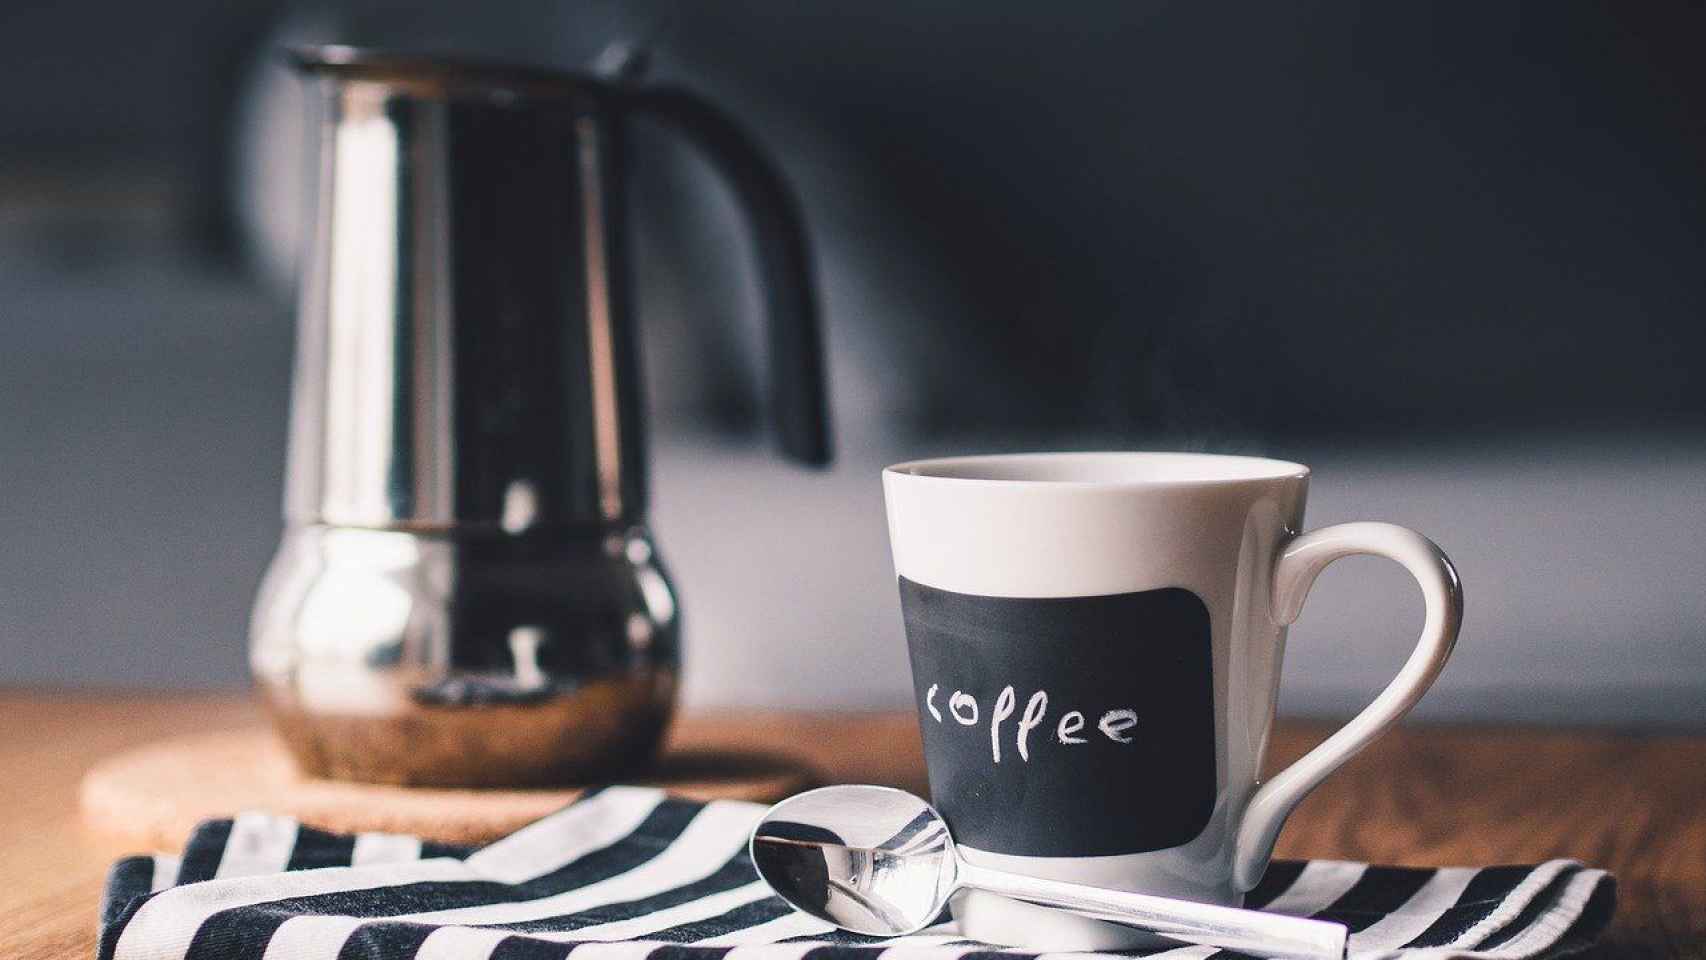 Café como el que se puede degustar en News & Coffe / Fancycrave - PIXABAY